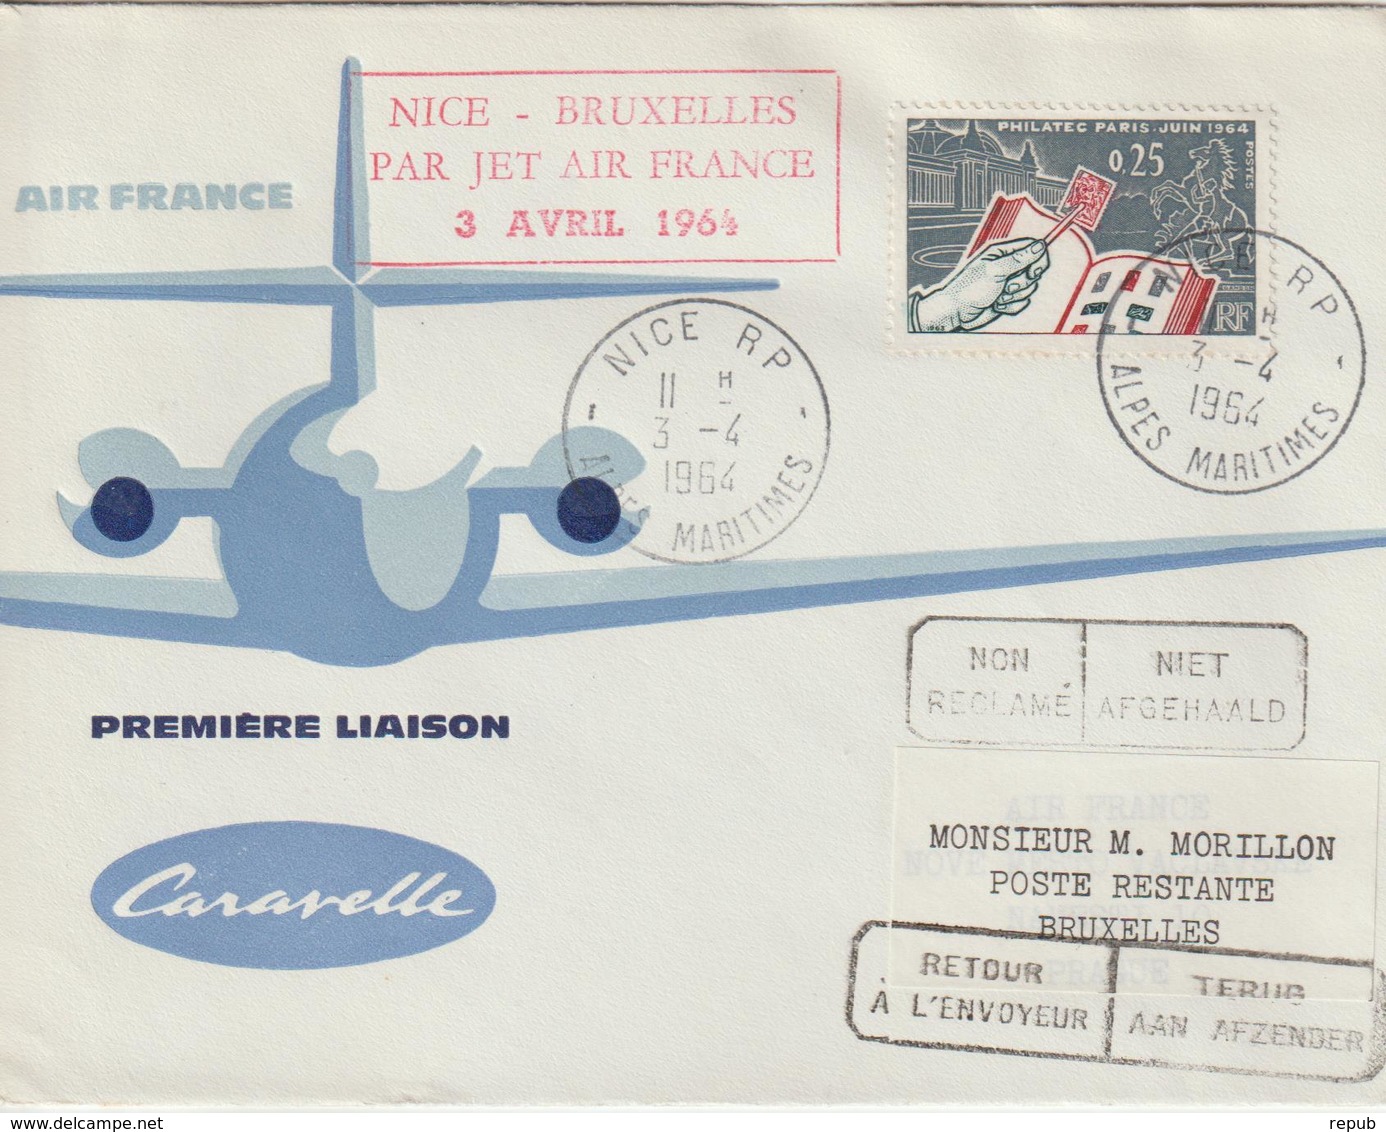 France 1964 Première Liaison Air France Nice Bruxelles - Primeros Vuelos